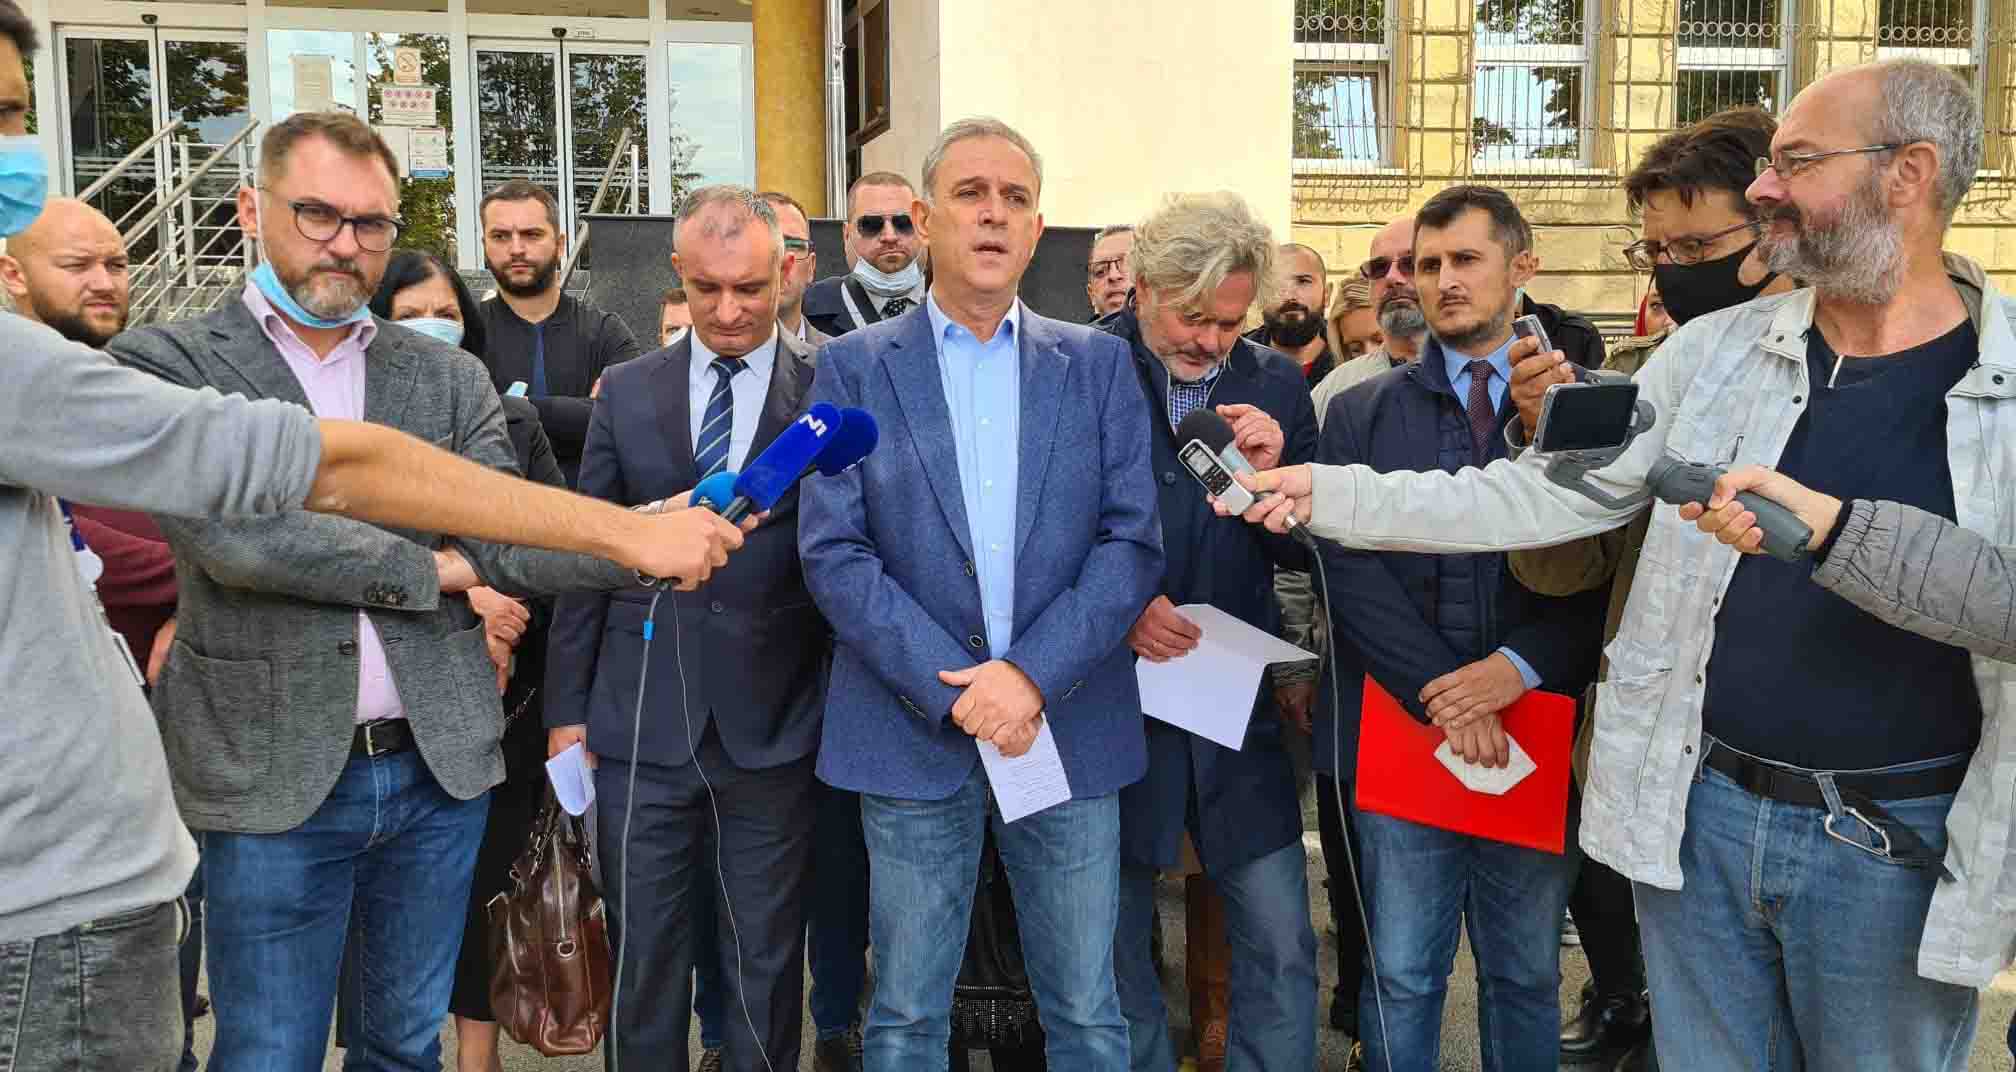 Понош: Поднели смо кривичну пријаву против челника БИА Гашића и Парезановића